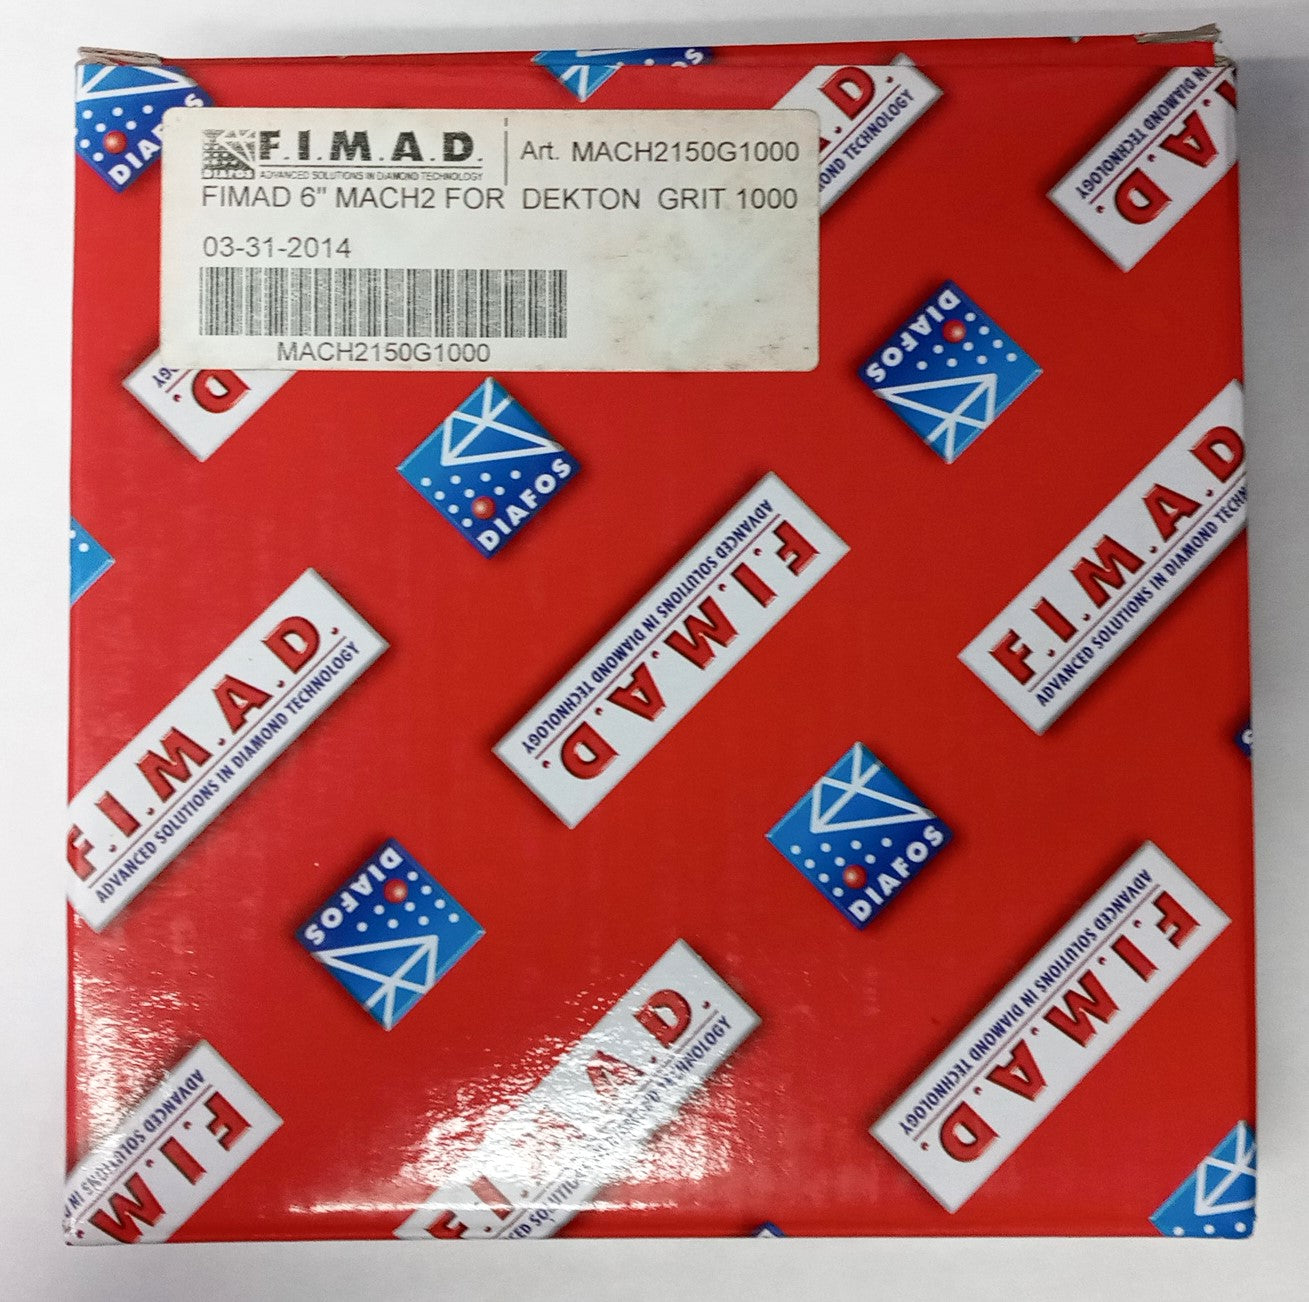 Fimad 6514 6" Mach 2 For Dekton 1000-Grit MACH2150G1000